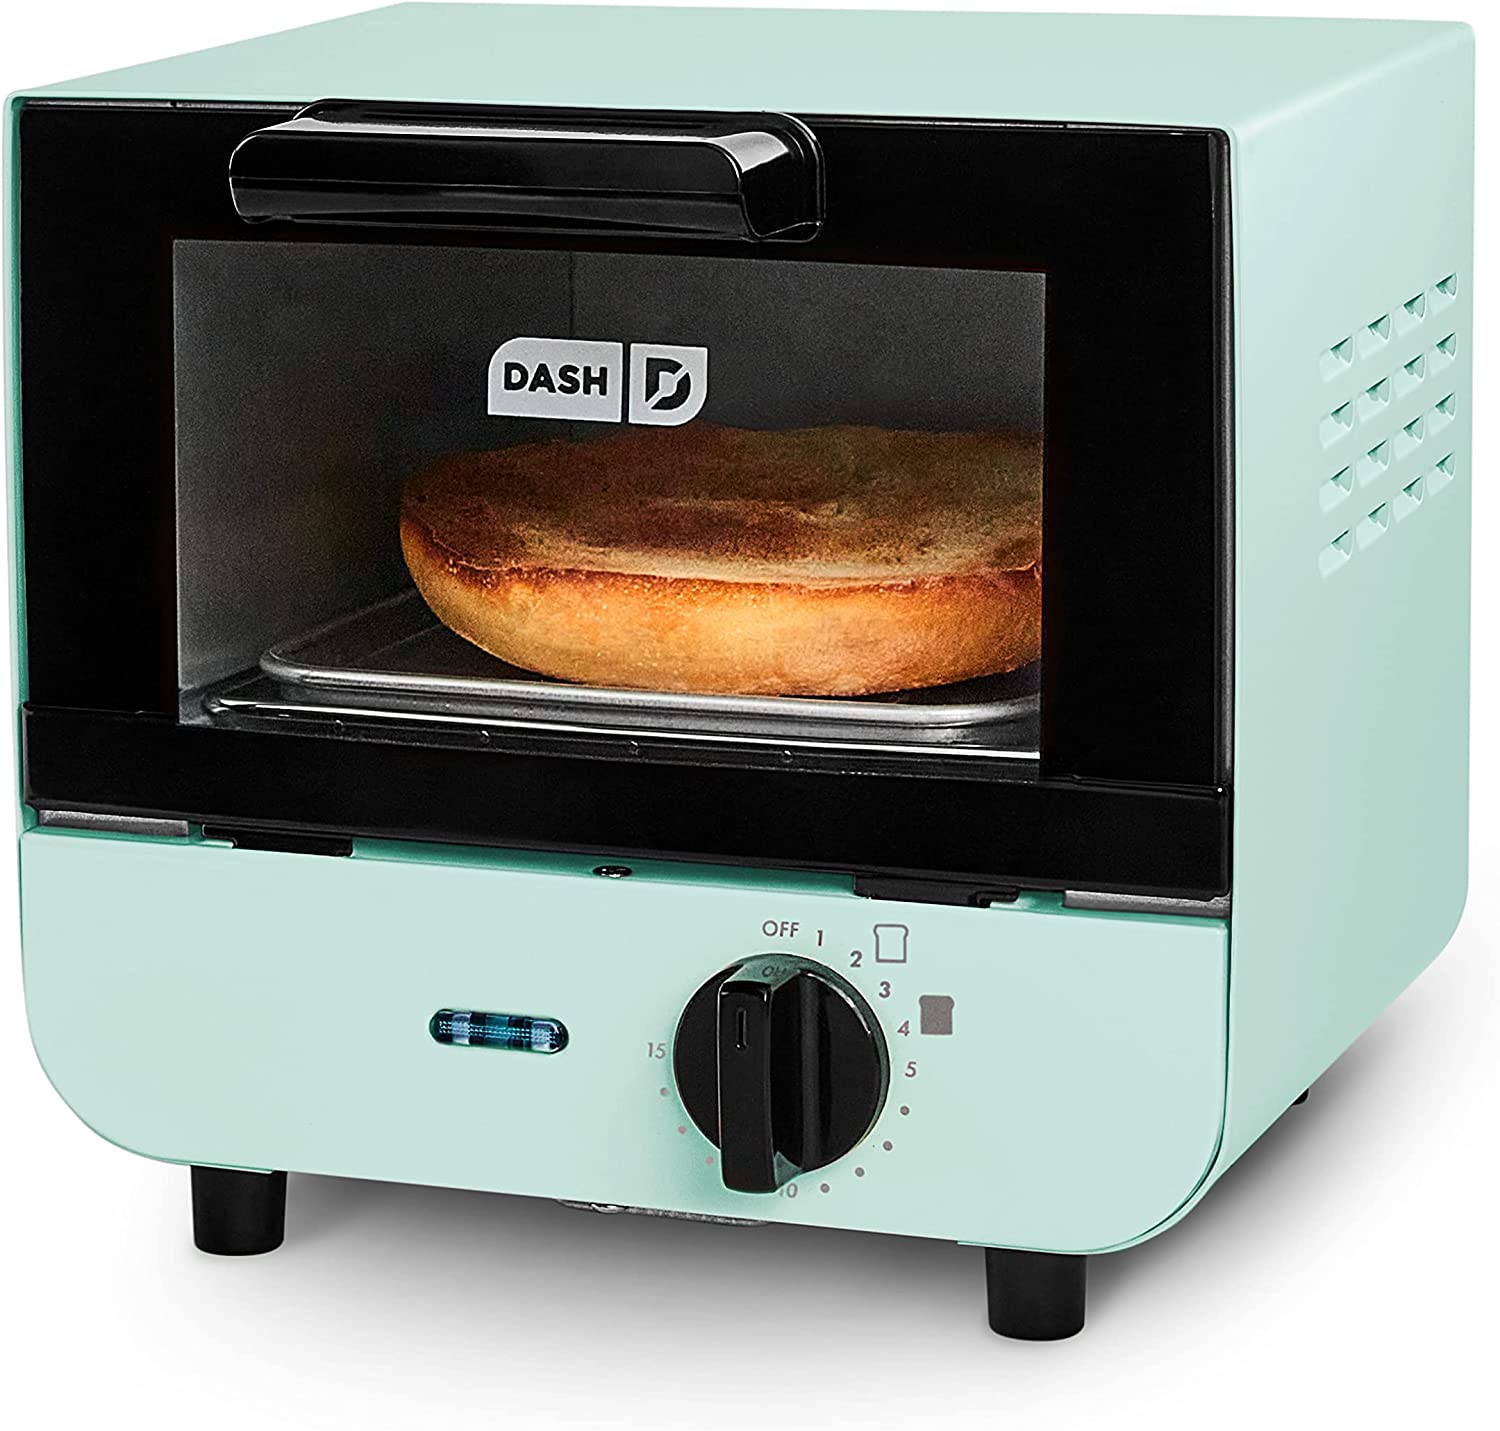 Dash dmto100gbaq04 mini toaster oven cooker